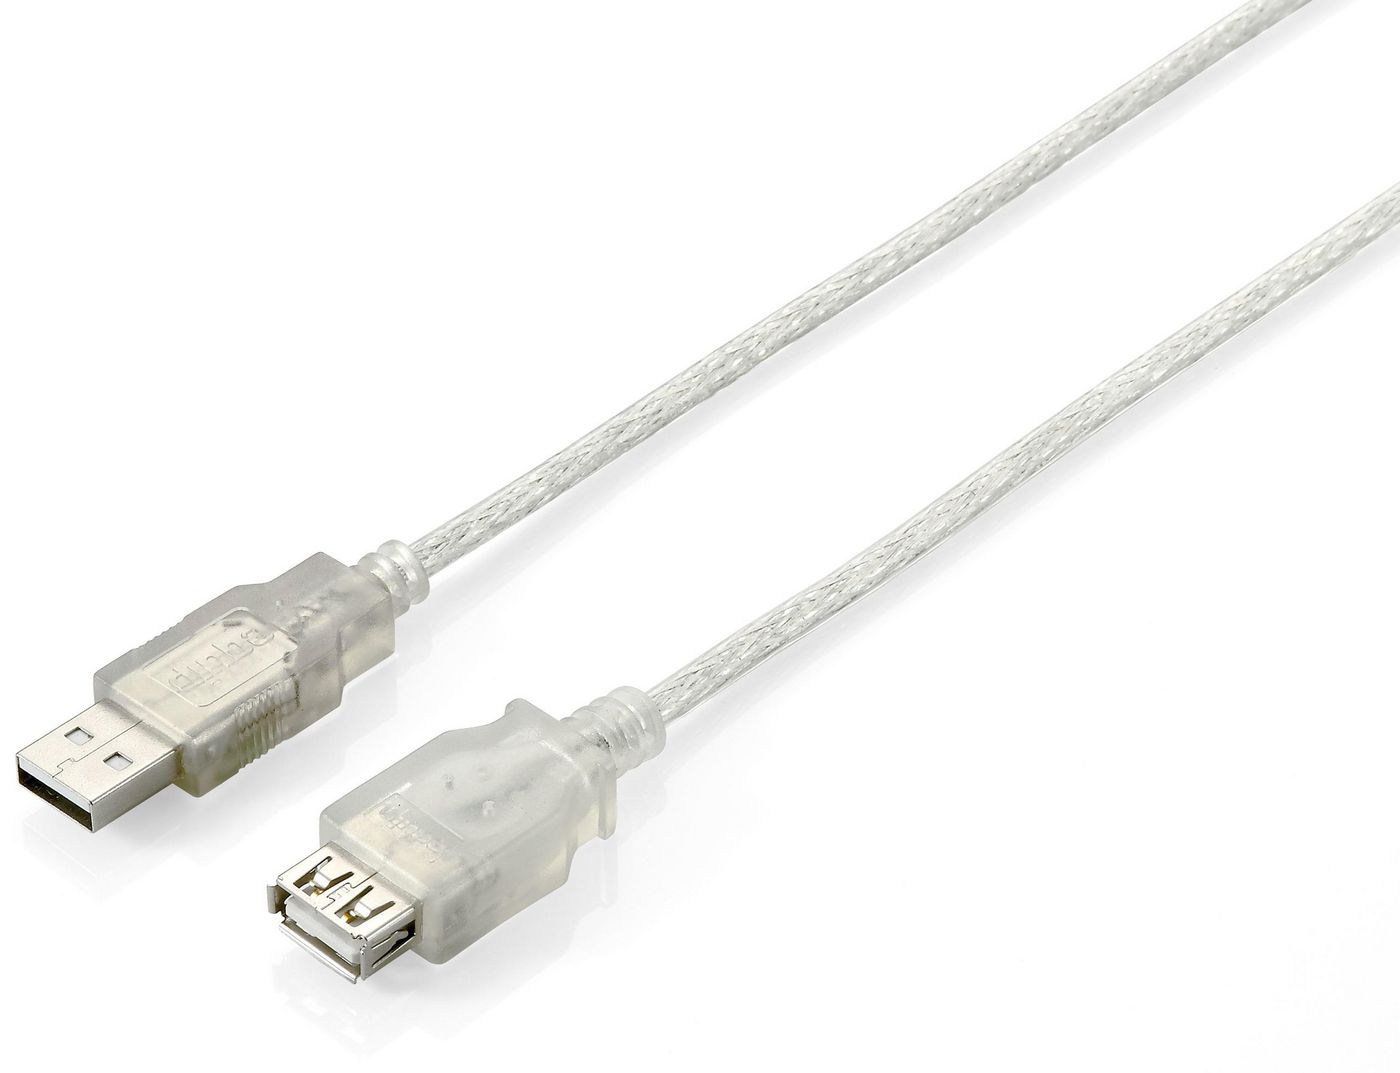 Kabel USB 2.0 Verläng. / 01,80m / StA - BuA / Silber / equip